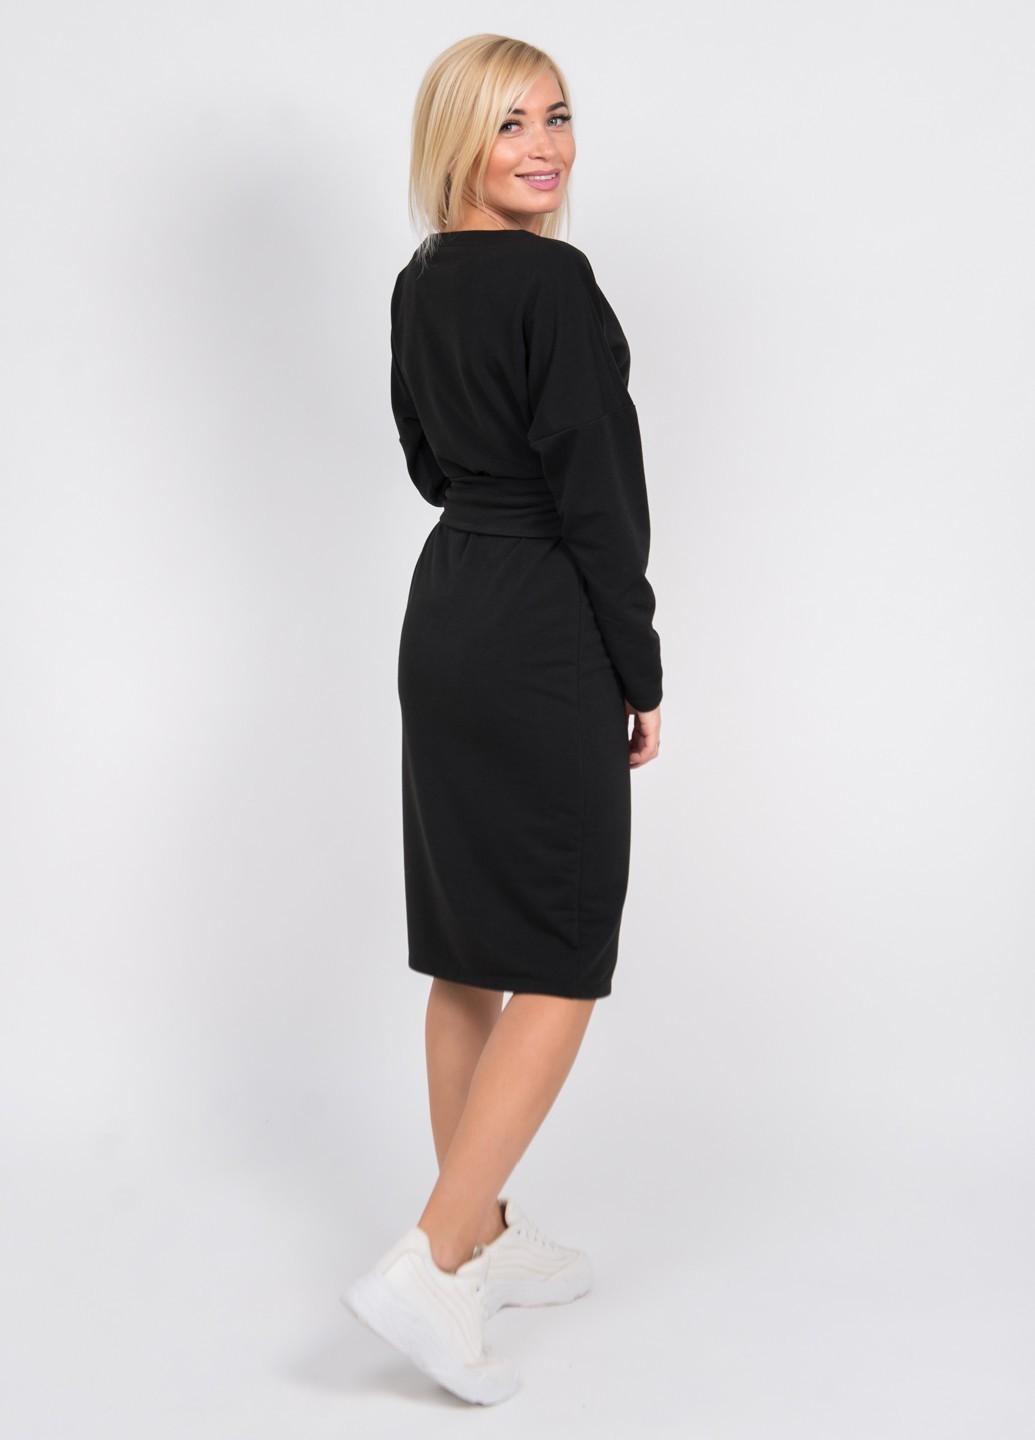 Платье женское трикотажное черное 02510 цена